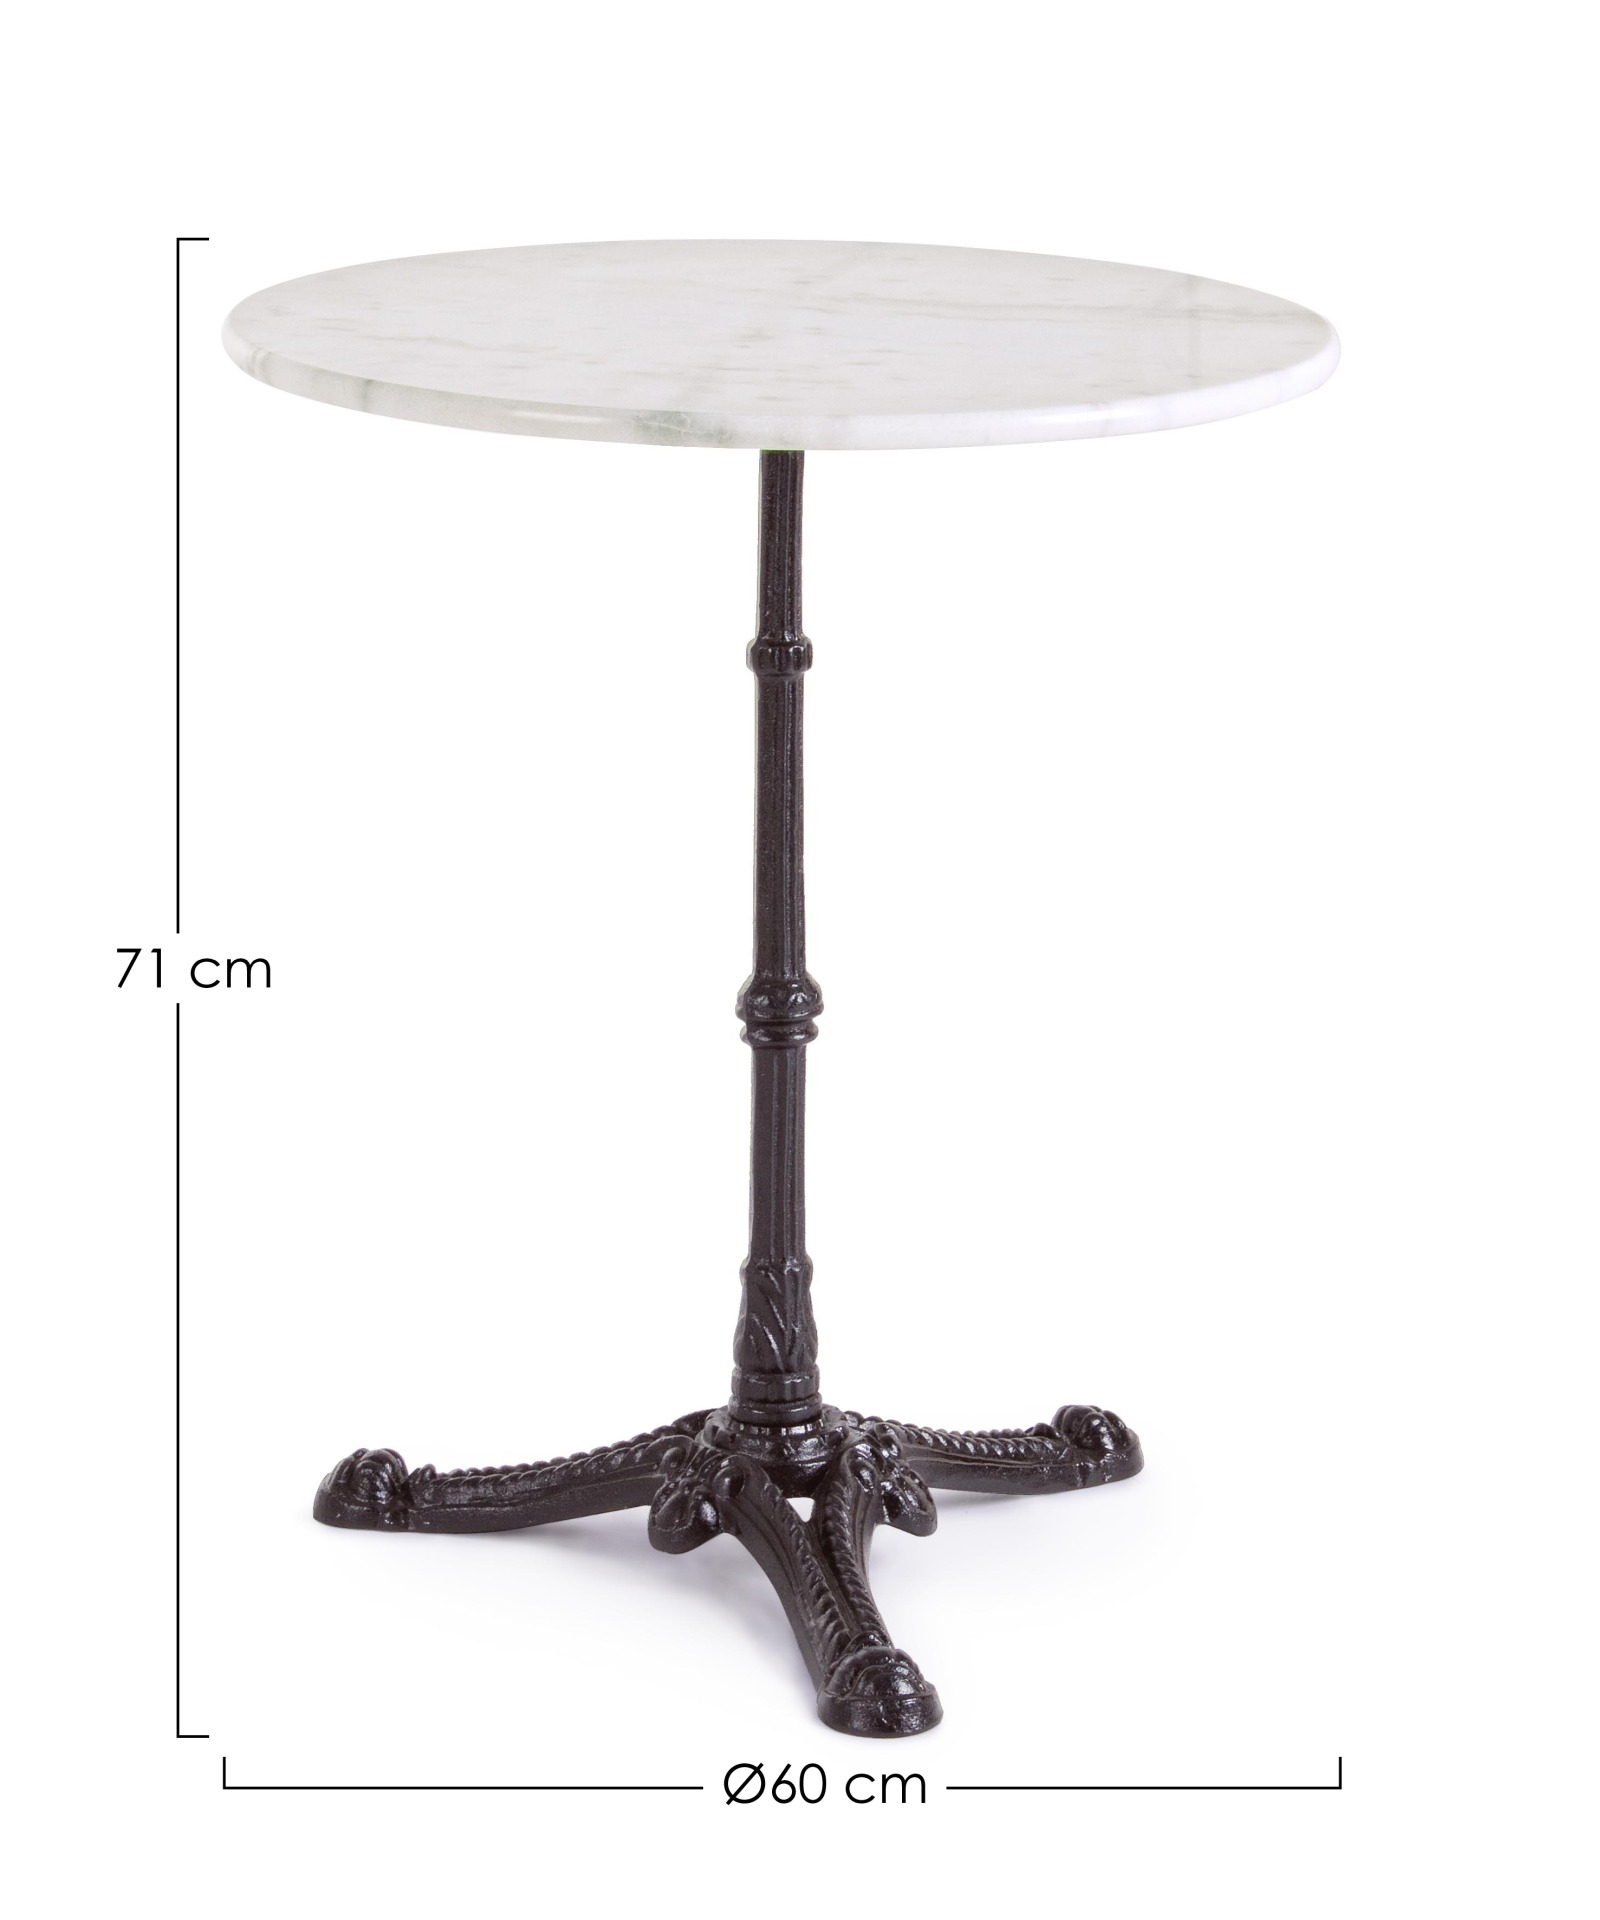 Der Esstisch Loren überzeugt mit seinem klassischem Design. Gefertigt wurde er aus Marmor, welches einen weißen Farbton besitzt. Das Gestell des Tisches ist aus Metall und besitzt eine schwarze Farbe. Der Tisch hat einen Durchmesser von 60 cm.